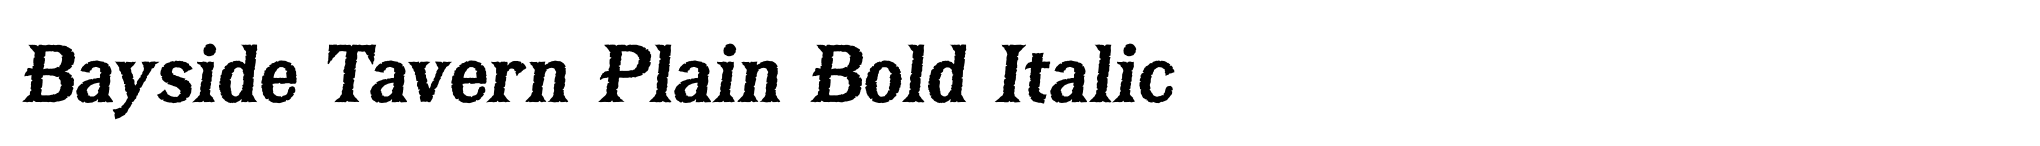 Bayside Tavern Plain Bold Italic image